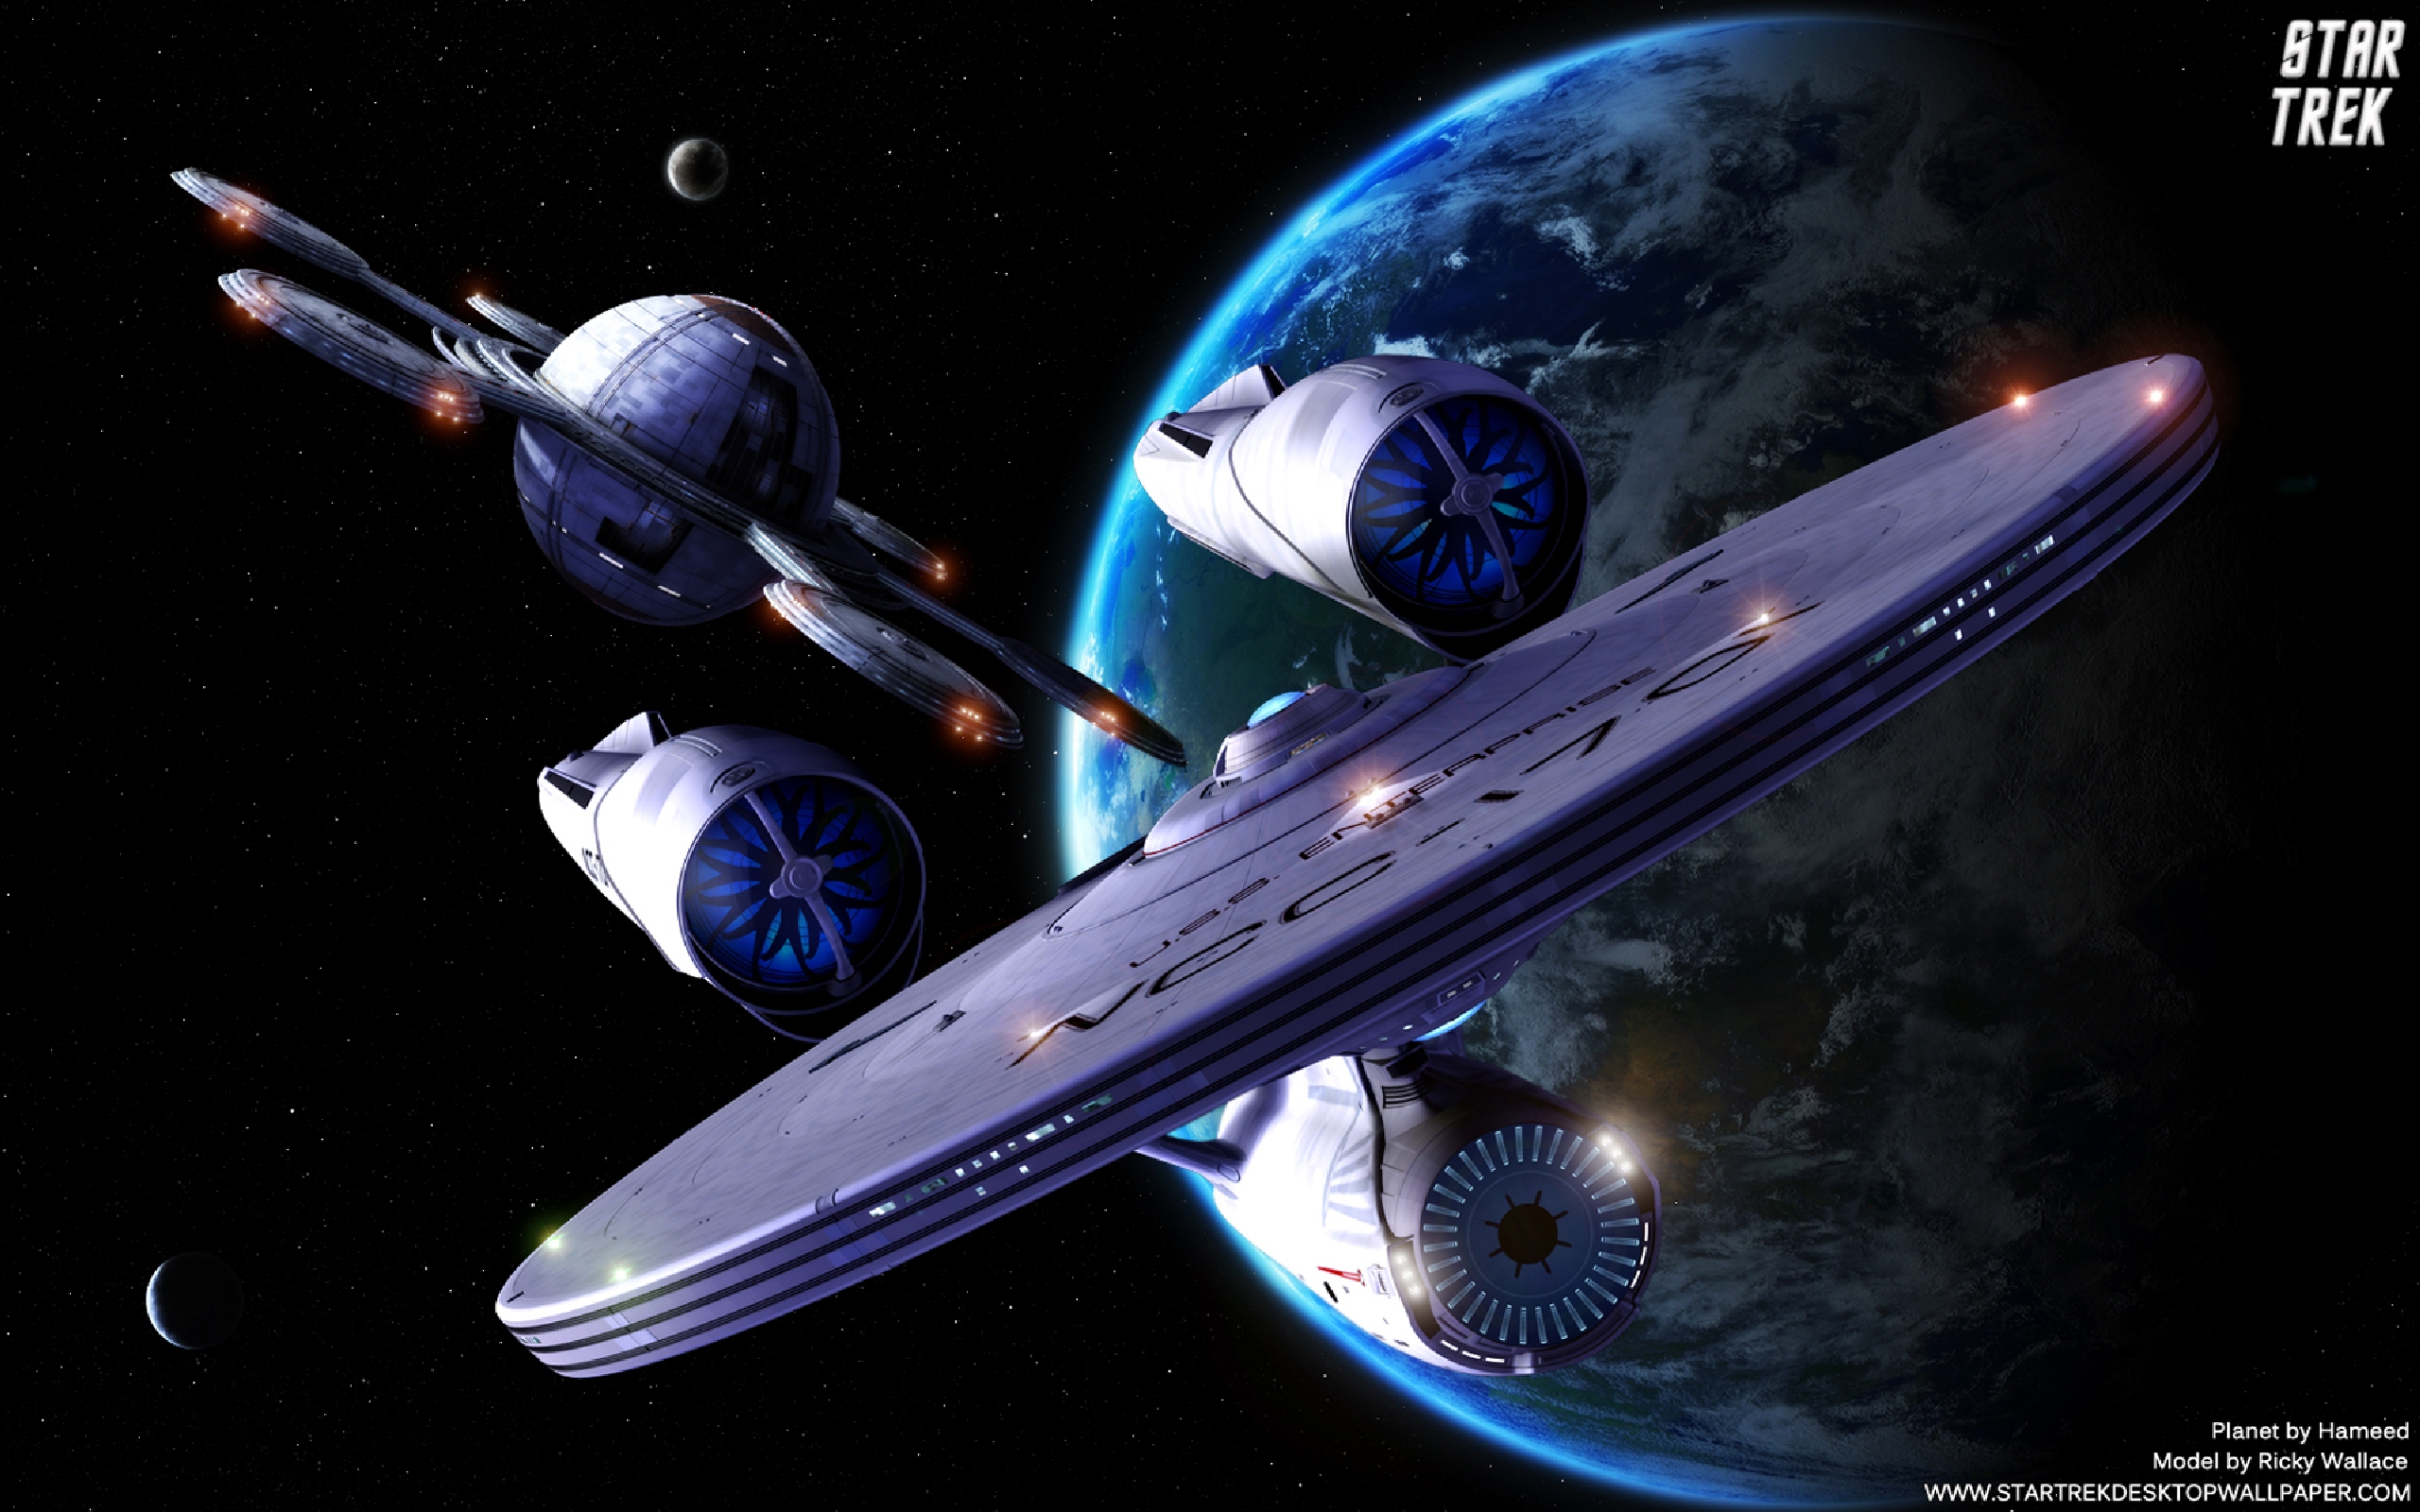 Star Trek Full HD Wallpaper And Background